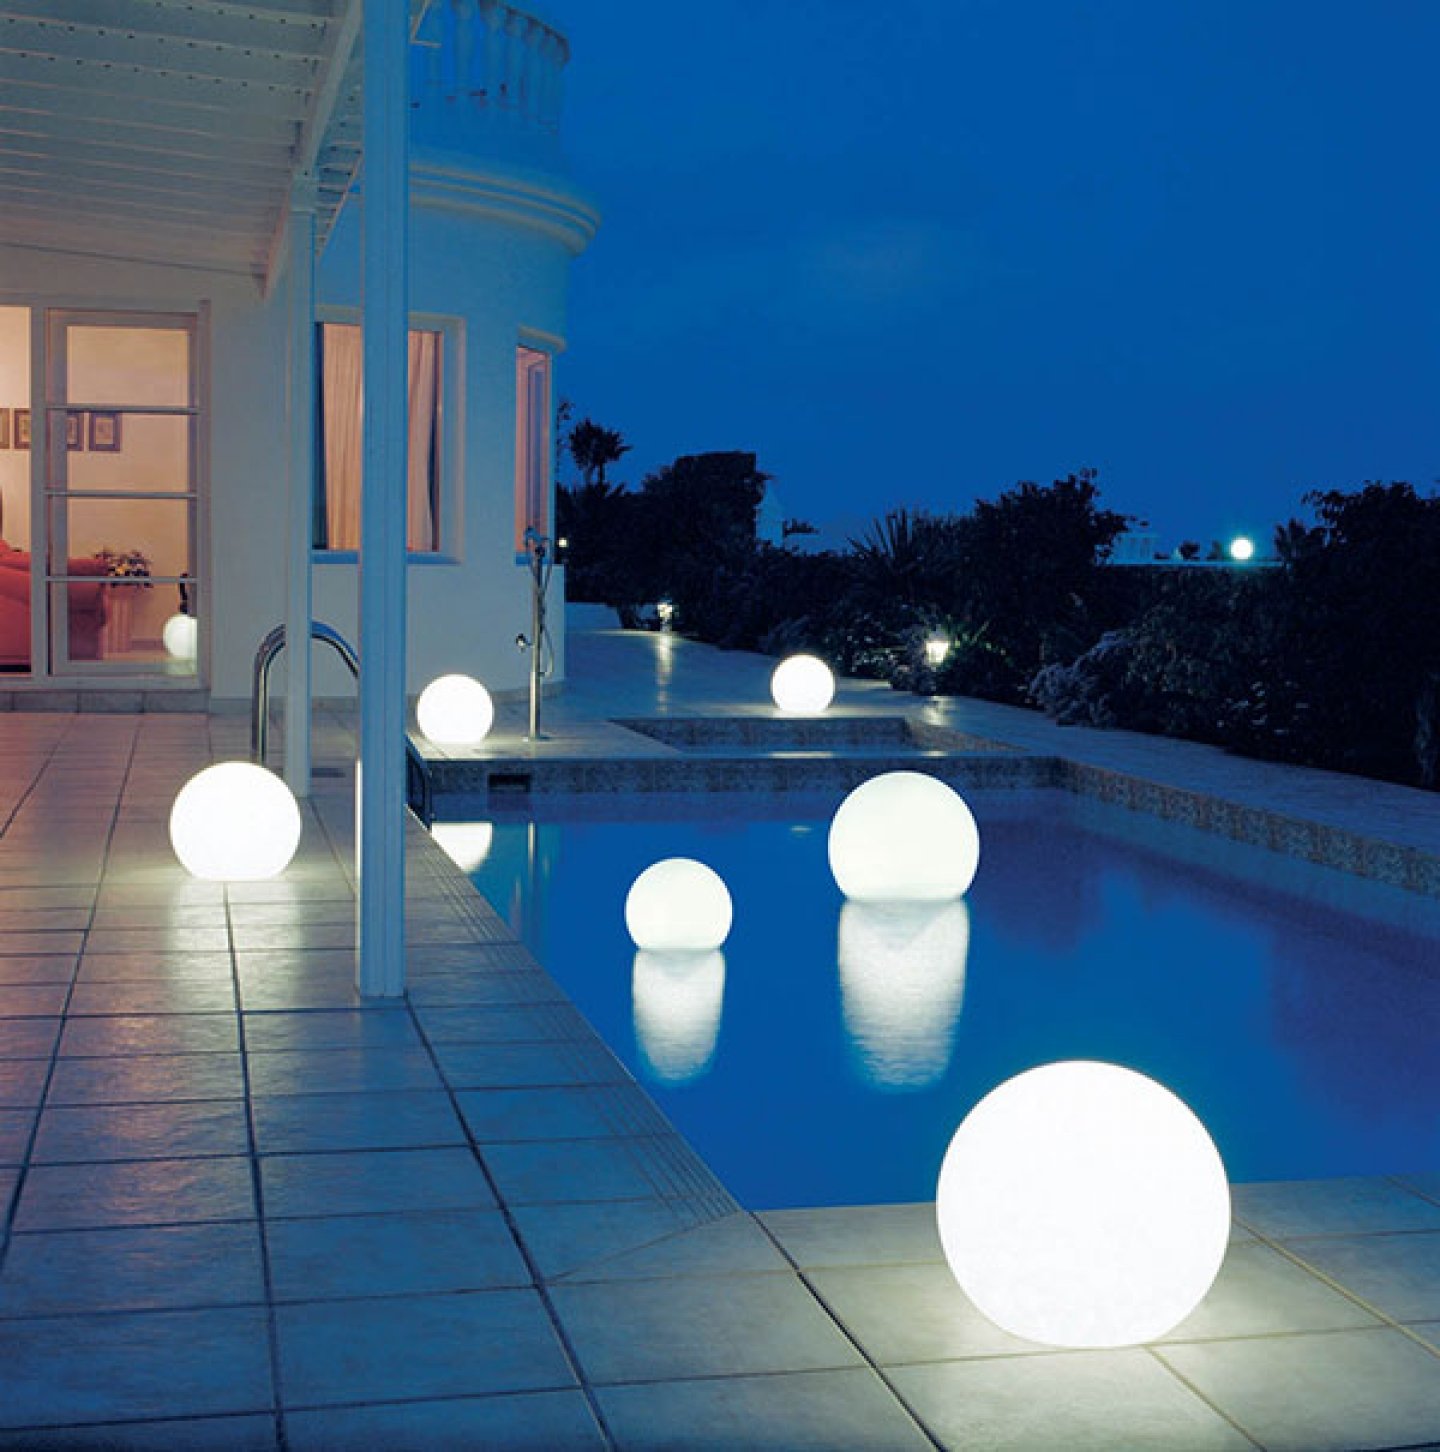 Những bóng đèn tròn màu trắng vừa có thể nổi trên mặt nước trong bể bơi, vừa có thể đặt ở các góc xung quanh bể bơi cũng là một cách thêm ánh đèn mới lạ cho nhà bạn.